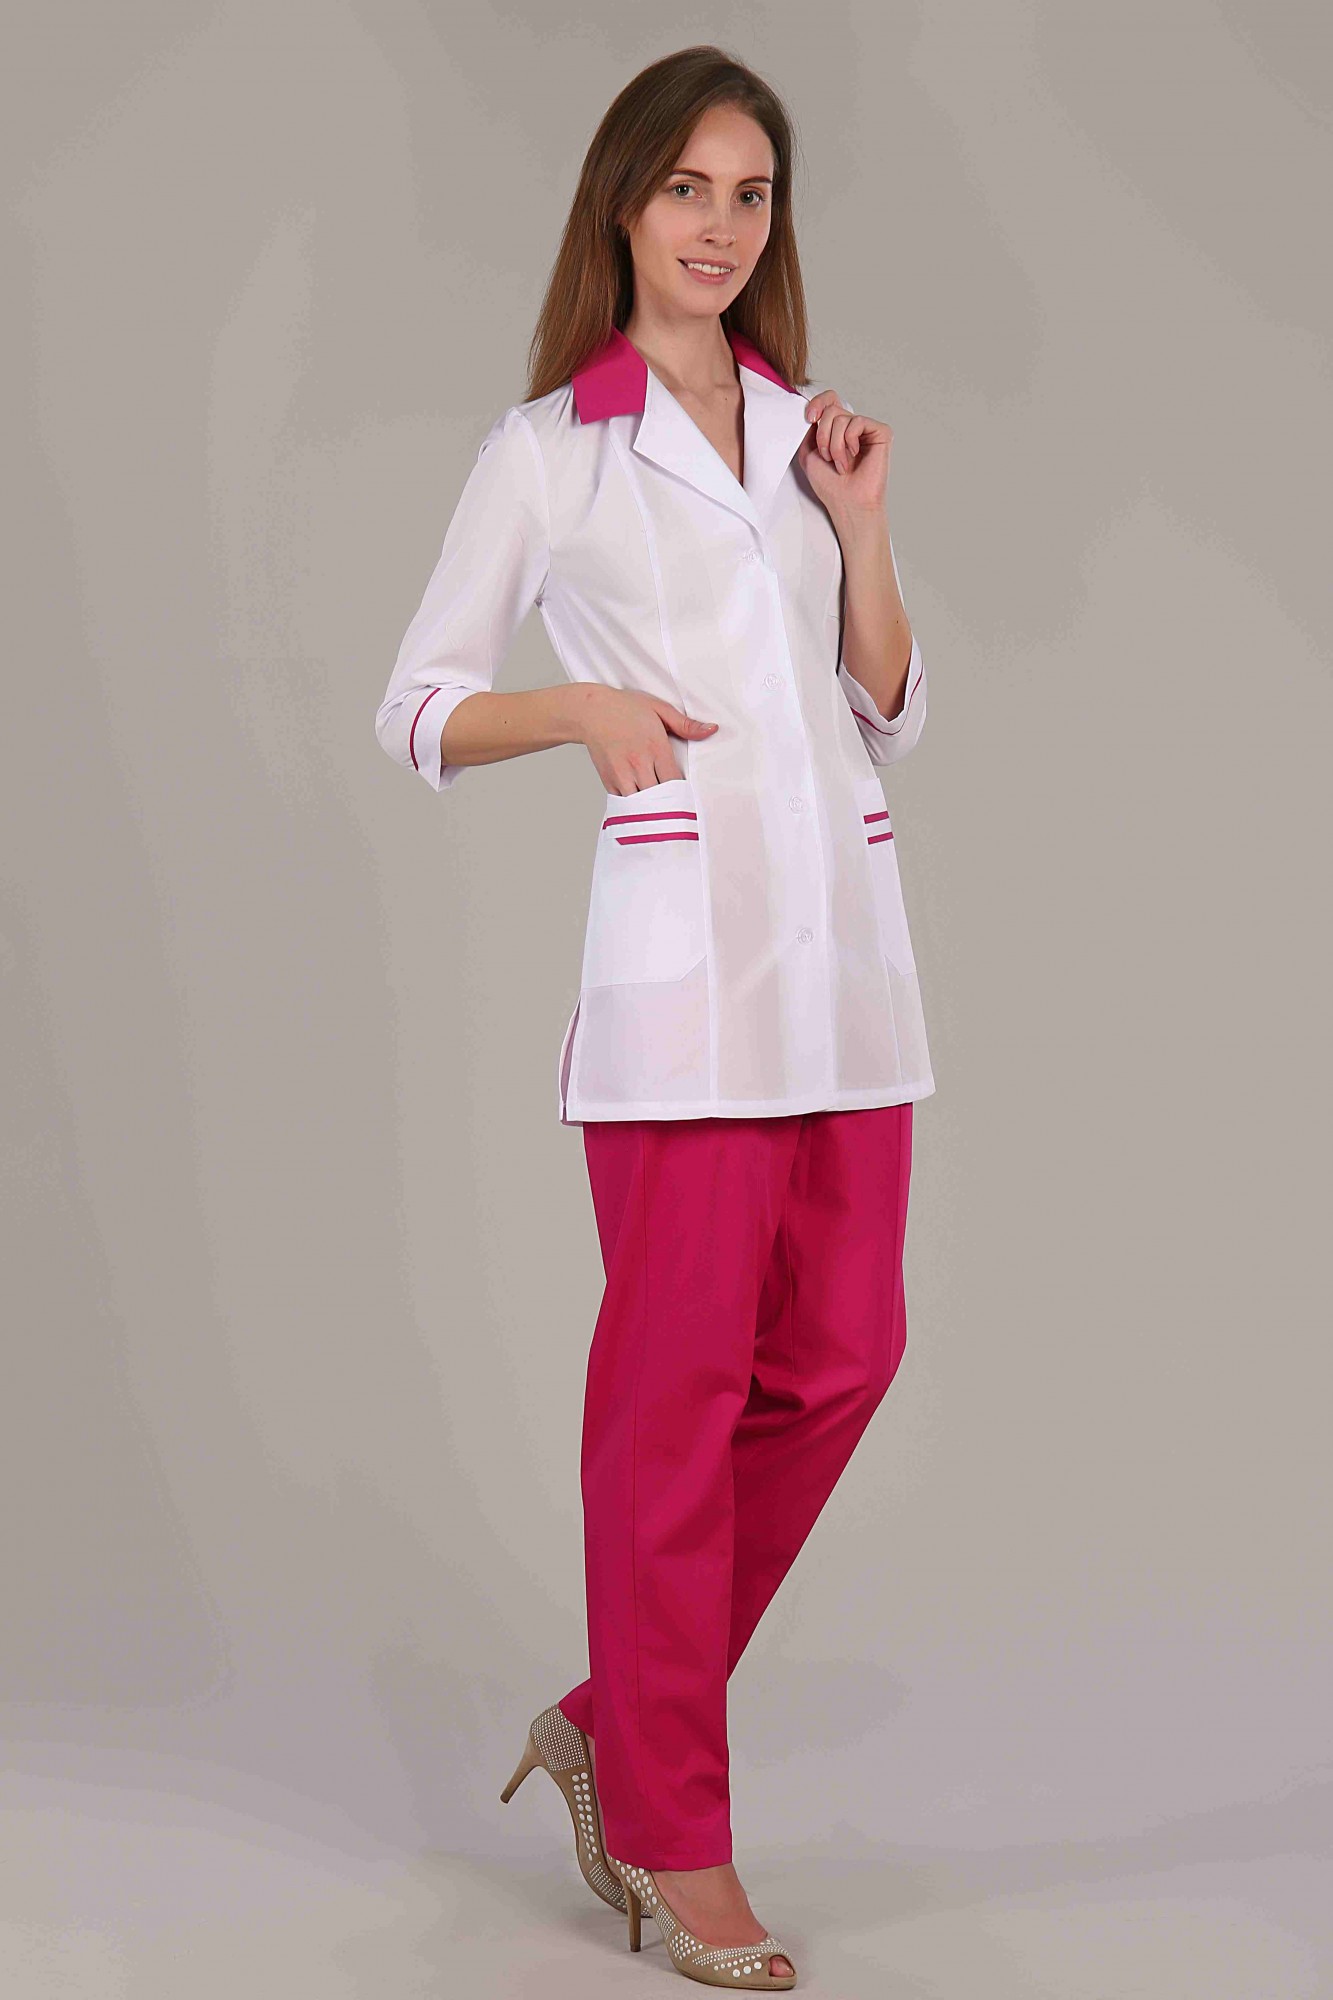 Медицинский костюм женский купить на валберис